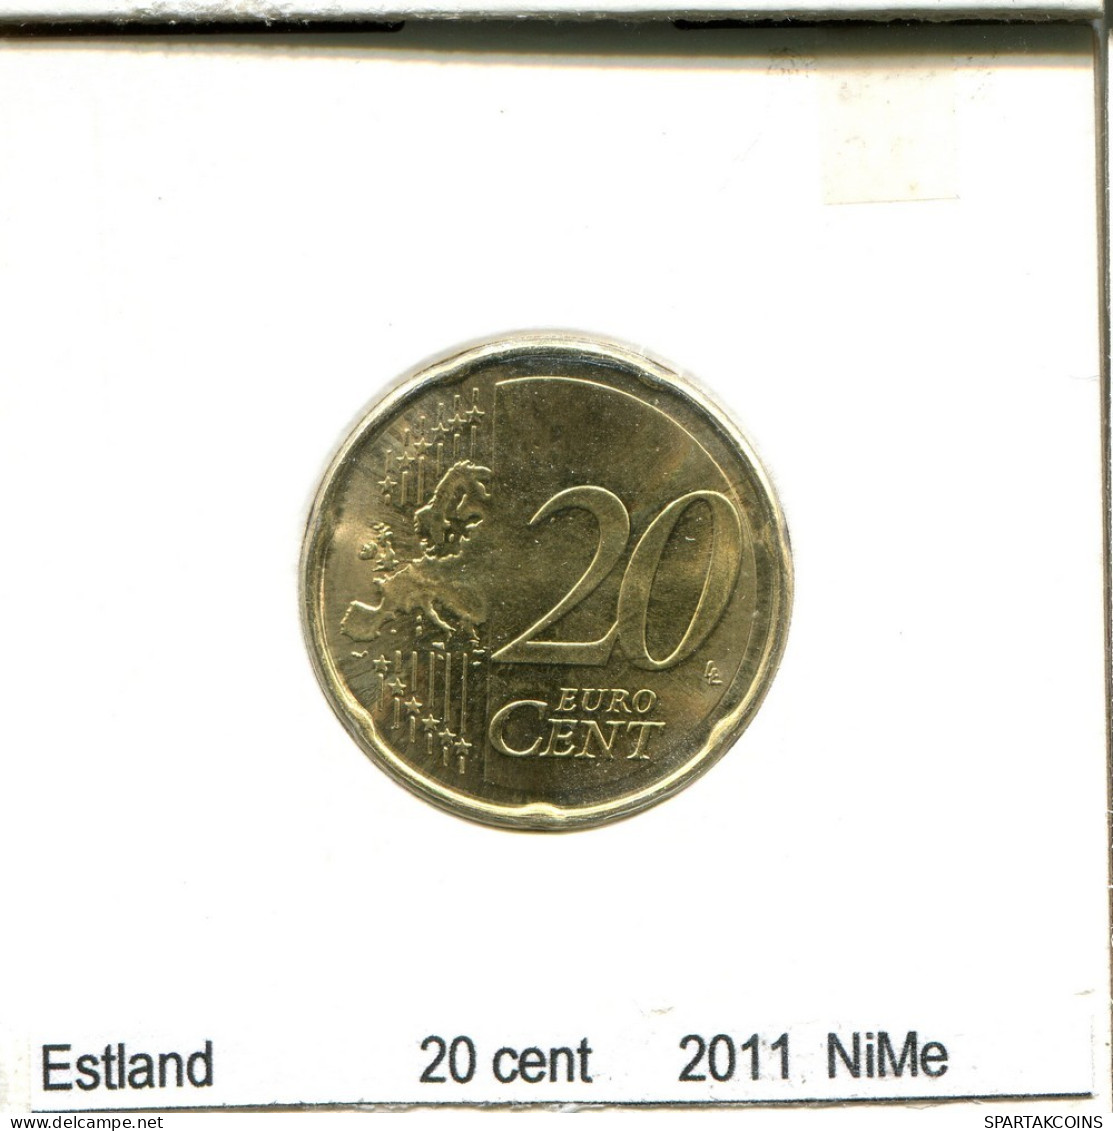 20 CENTS 2011 ESTLAND ESTONIA Münze #AS688.D.A - Estonie